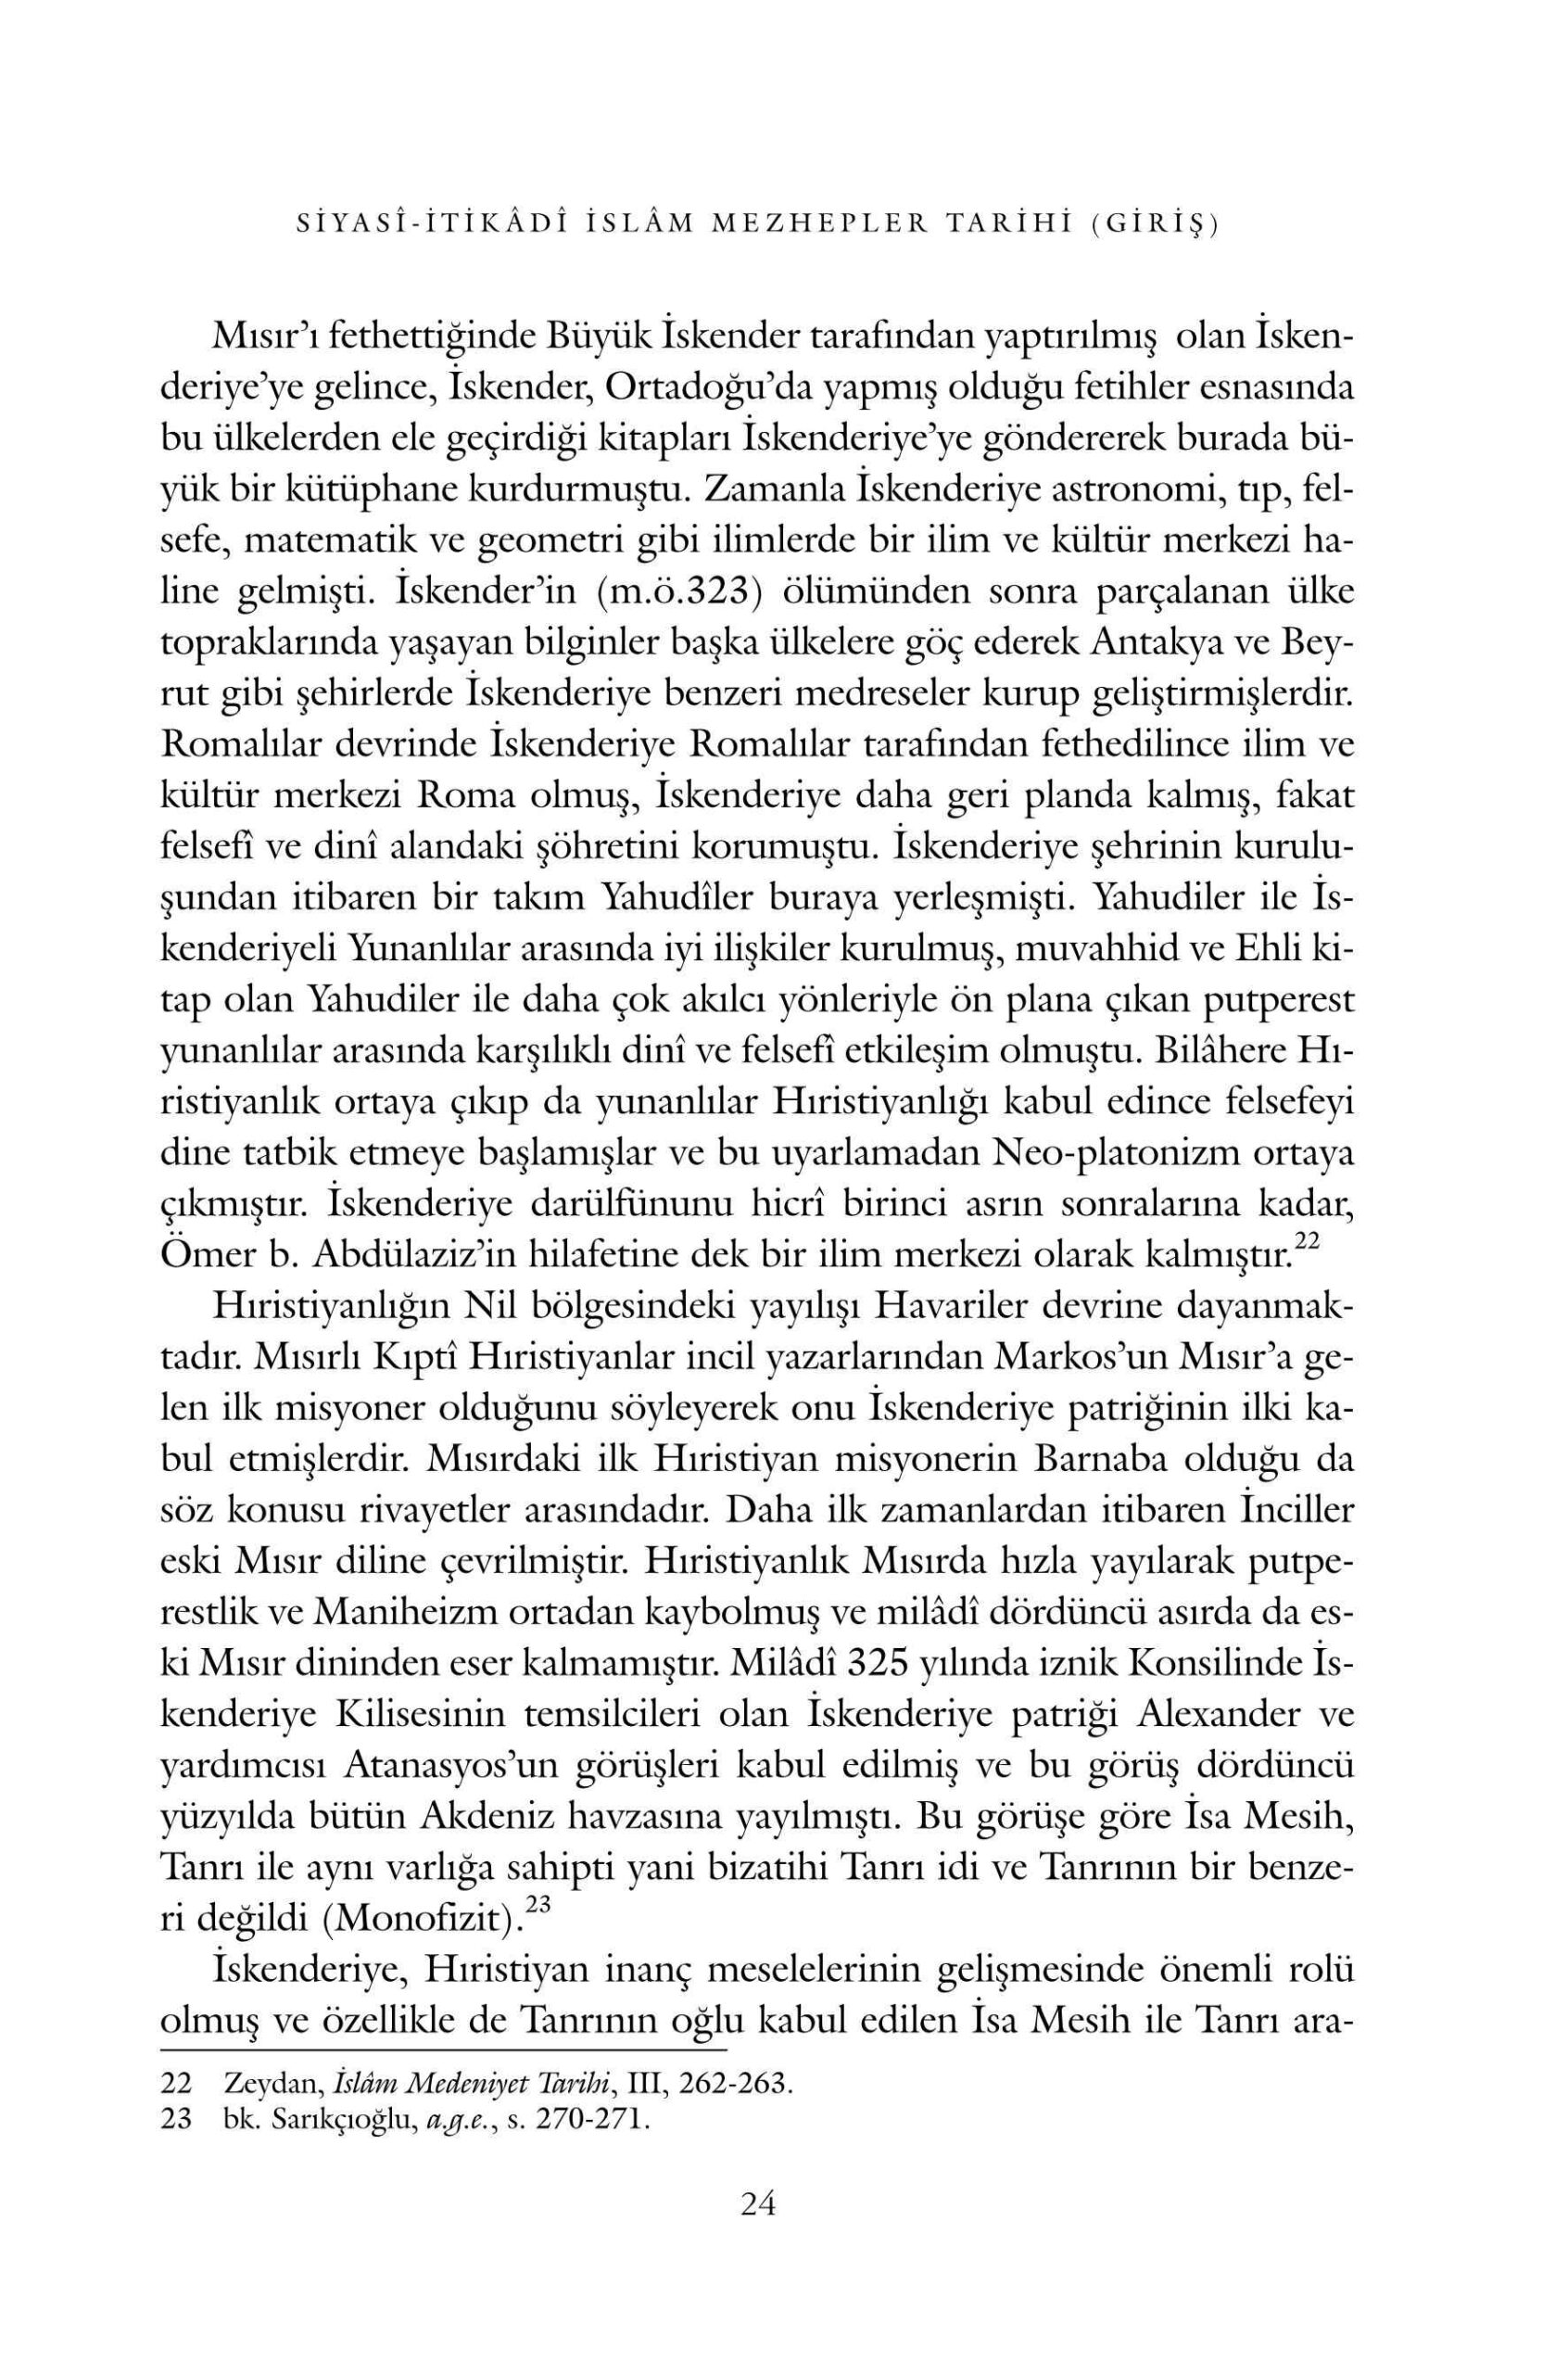 Halil Ibrahim Bulut - Siyasi-Itikadi Islam Mezhepler Tarihi - IsikAkademiY.pdf, 151-Sayfa 